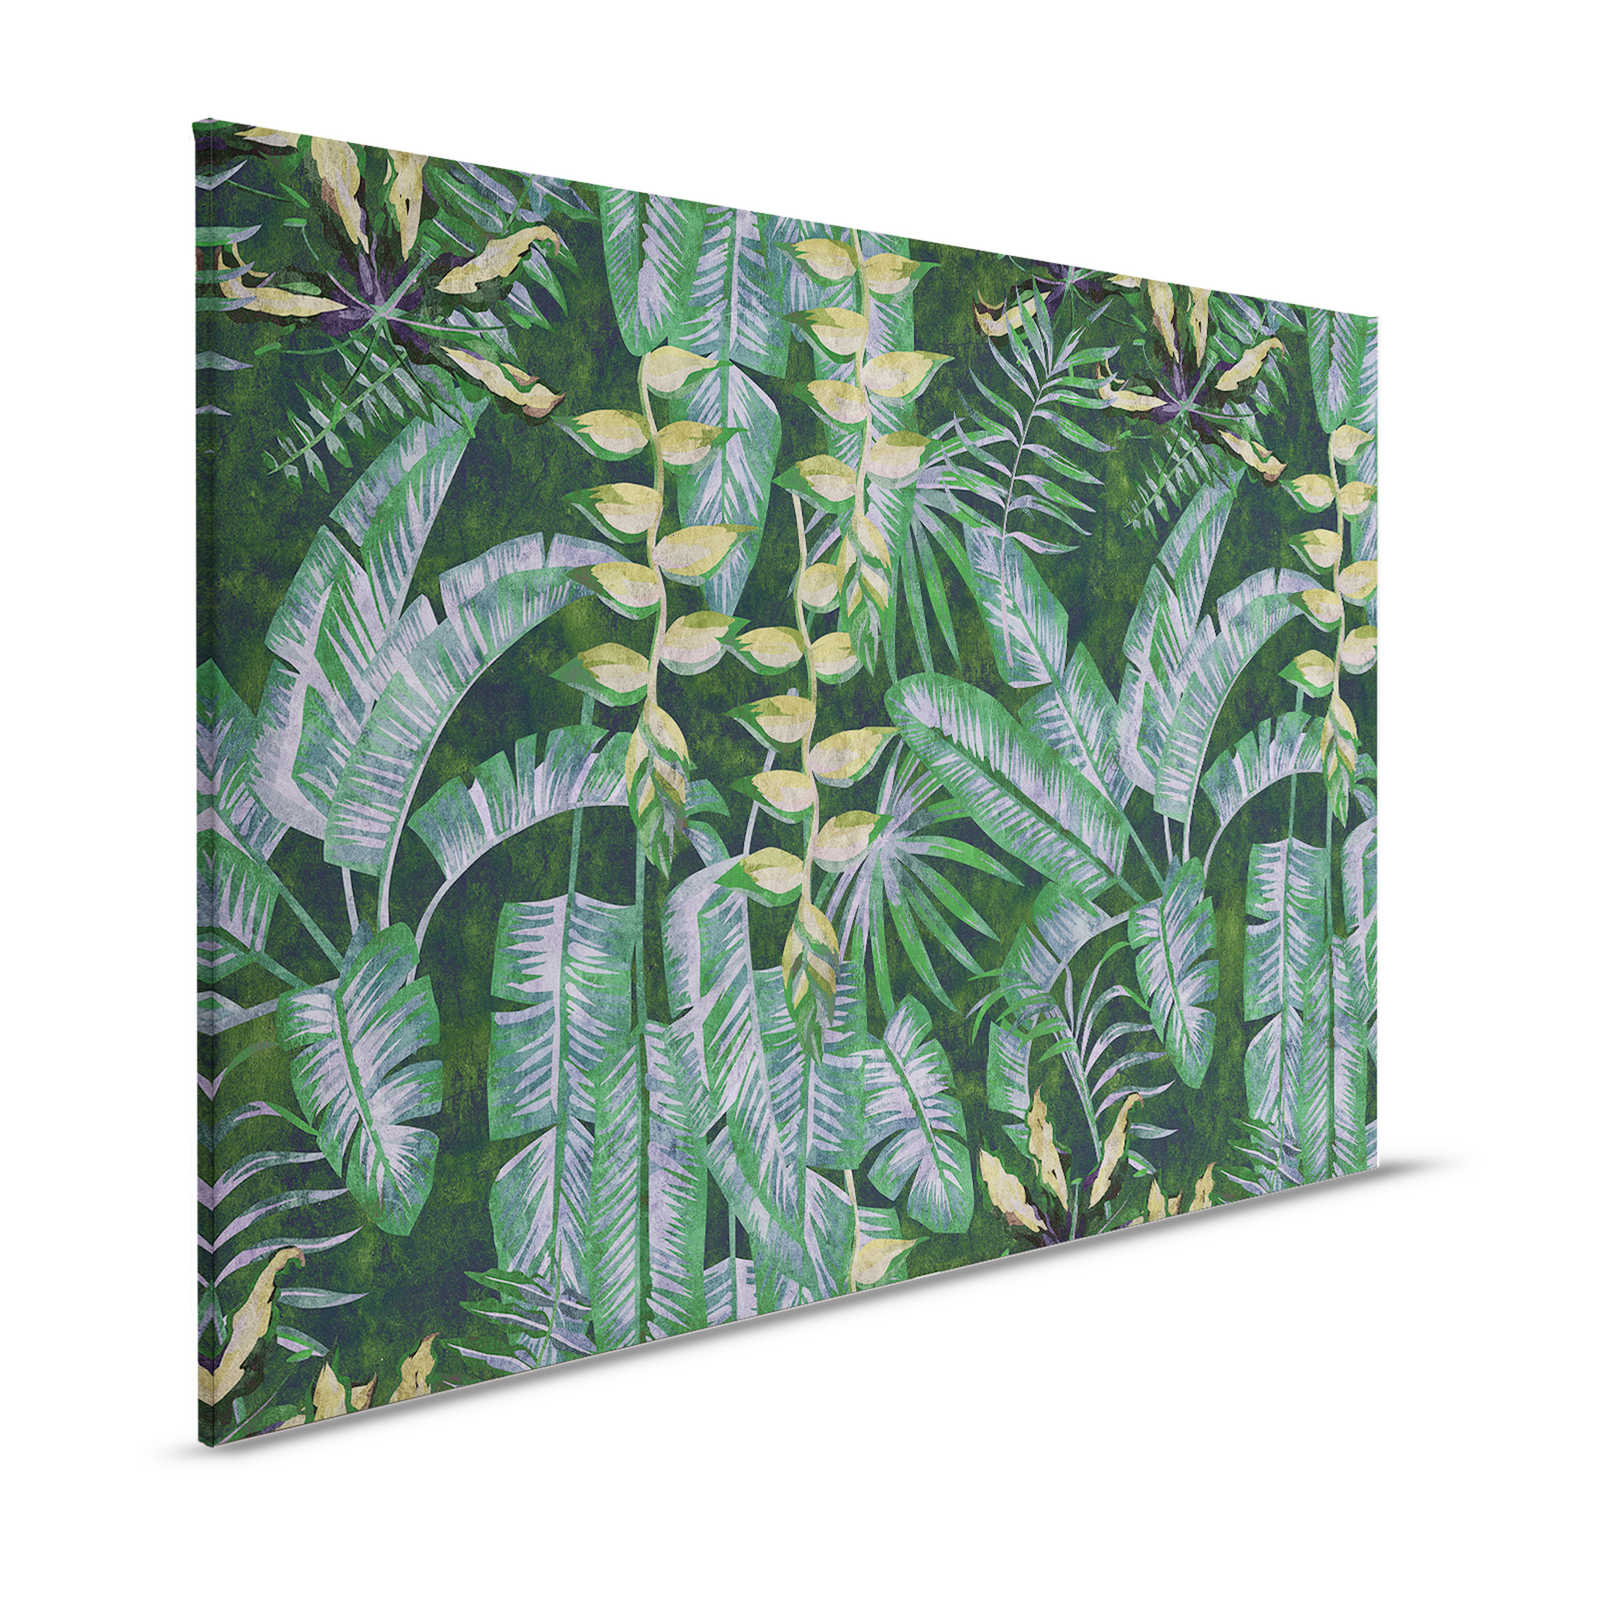 Tropicana 2 - Canvas schilderij met tropische planten - 1.20 m x 0.80 m
